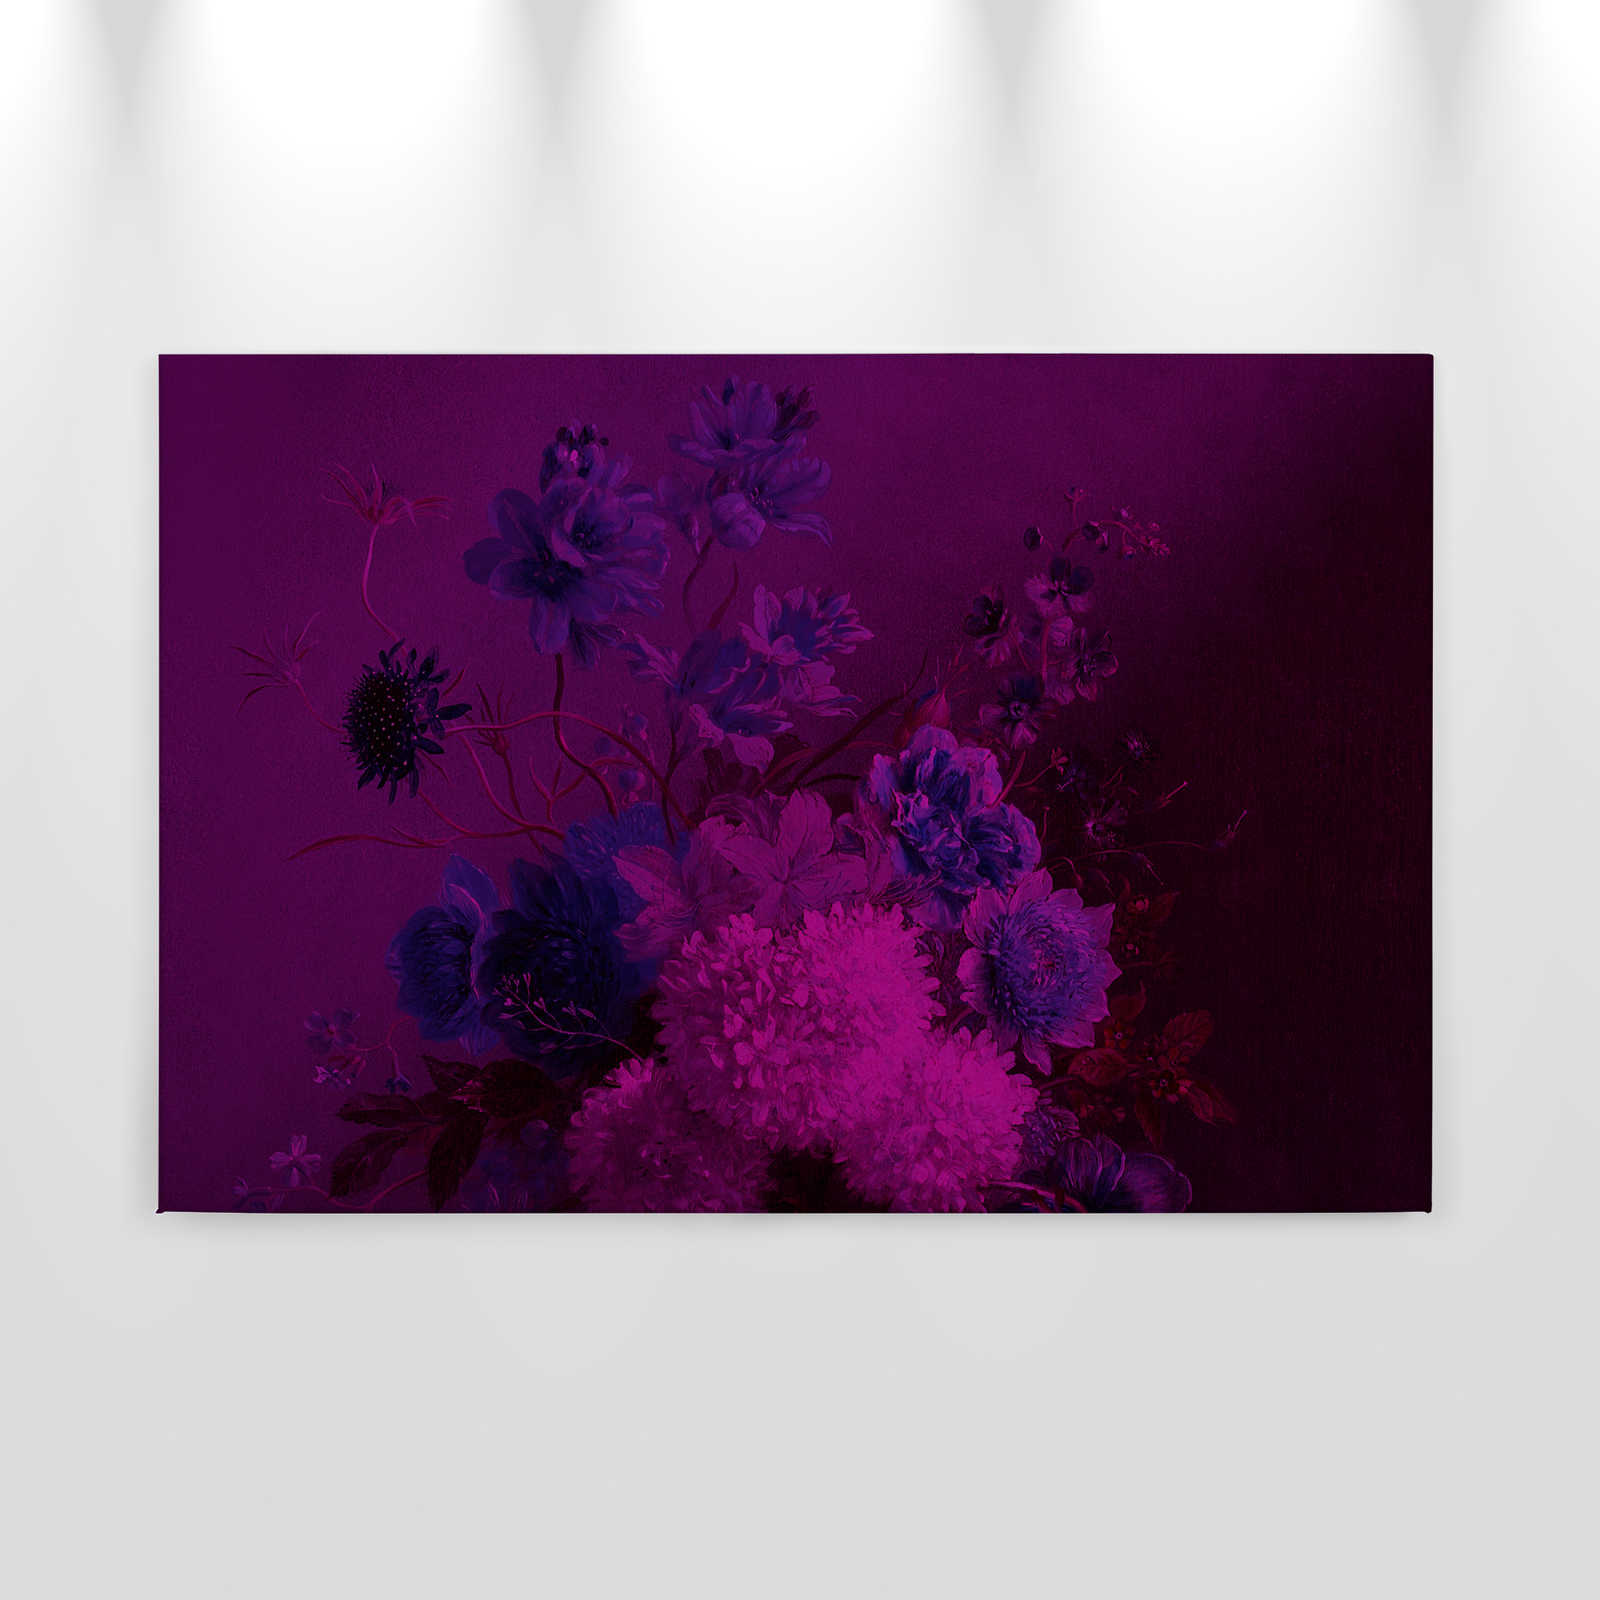             Toile néon avec fleurs nature morte | bouquet Vibran 3 - 0,90 m x 0,60 m
        